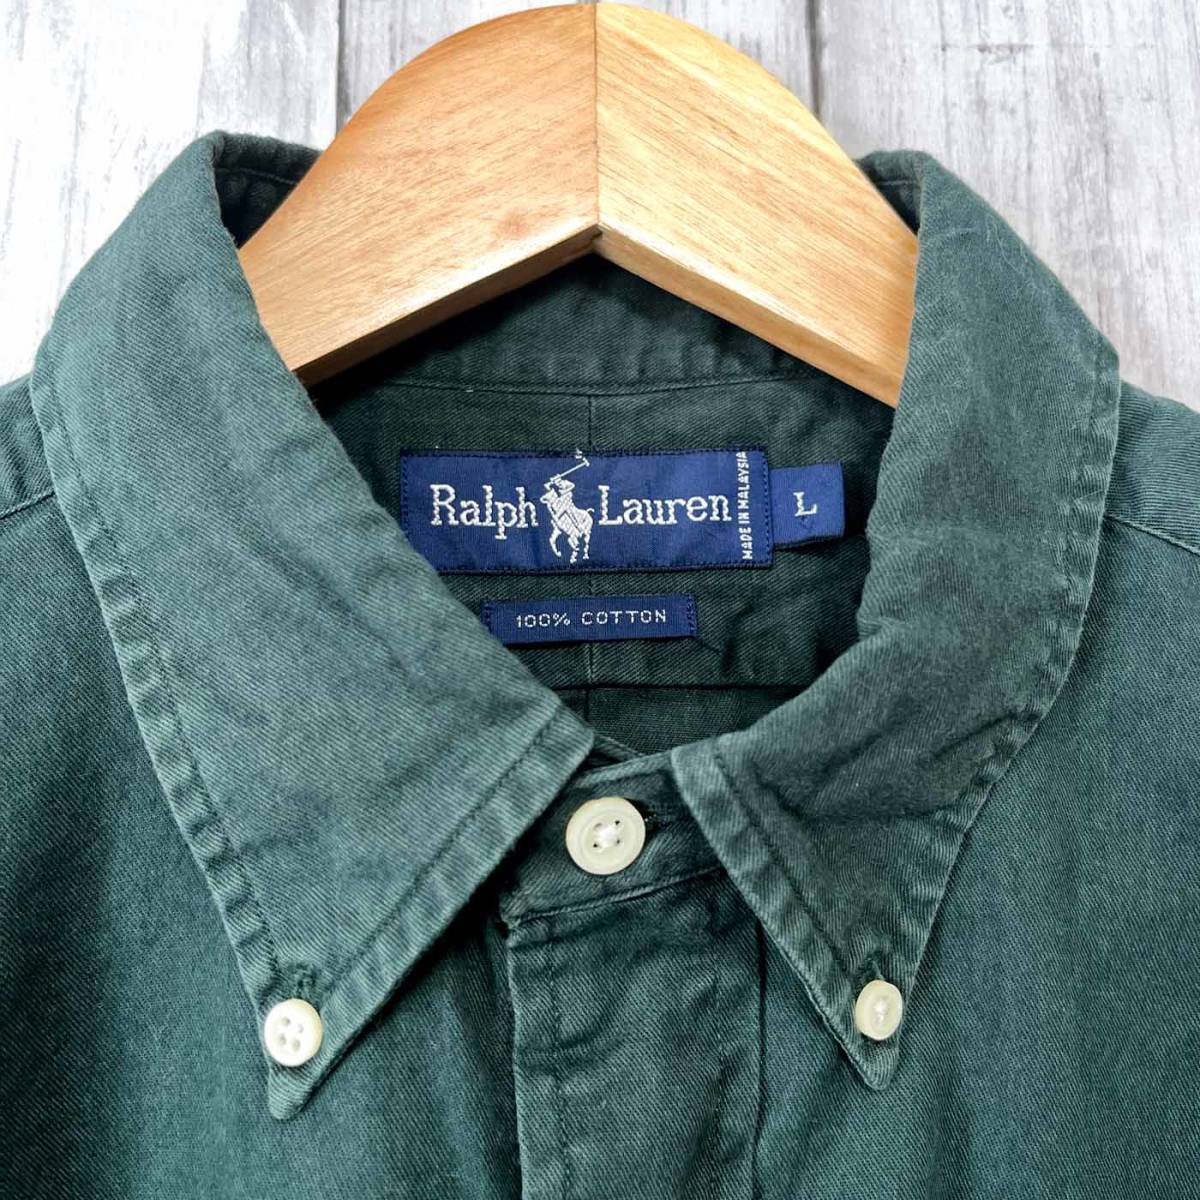  Ralph Lauren Ralph Lauren рубашка с коротким рукавом мужской one отметка L размер 3-105